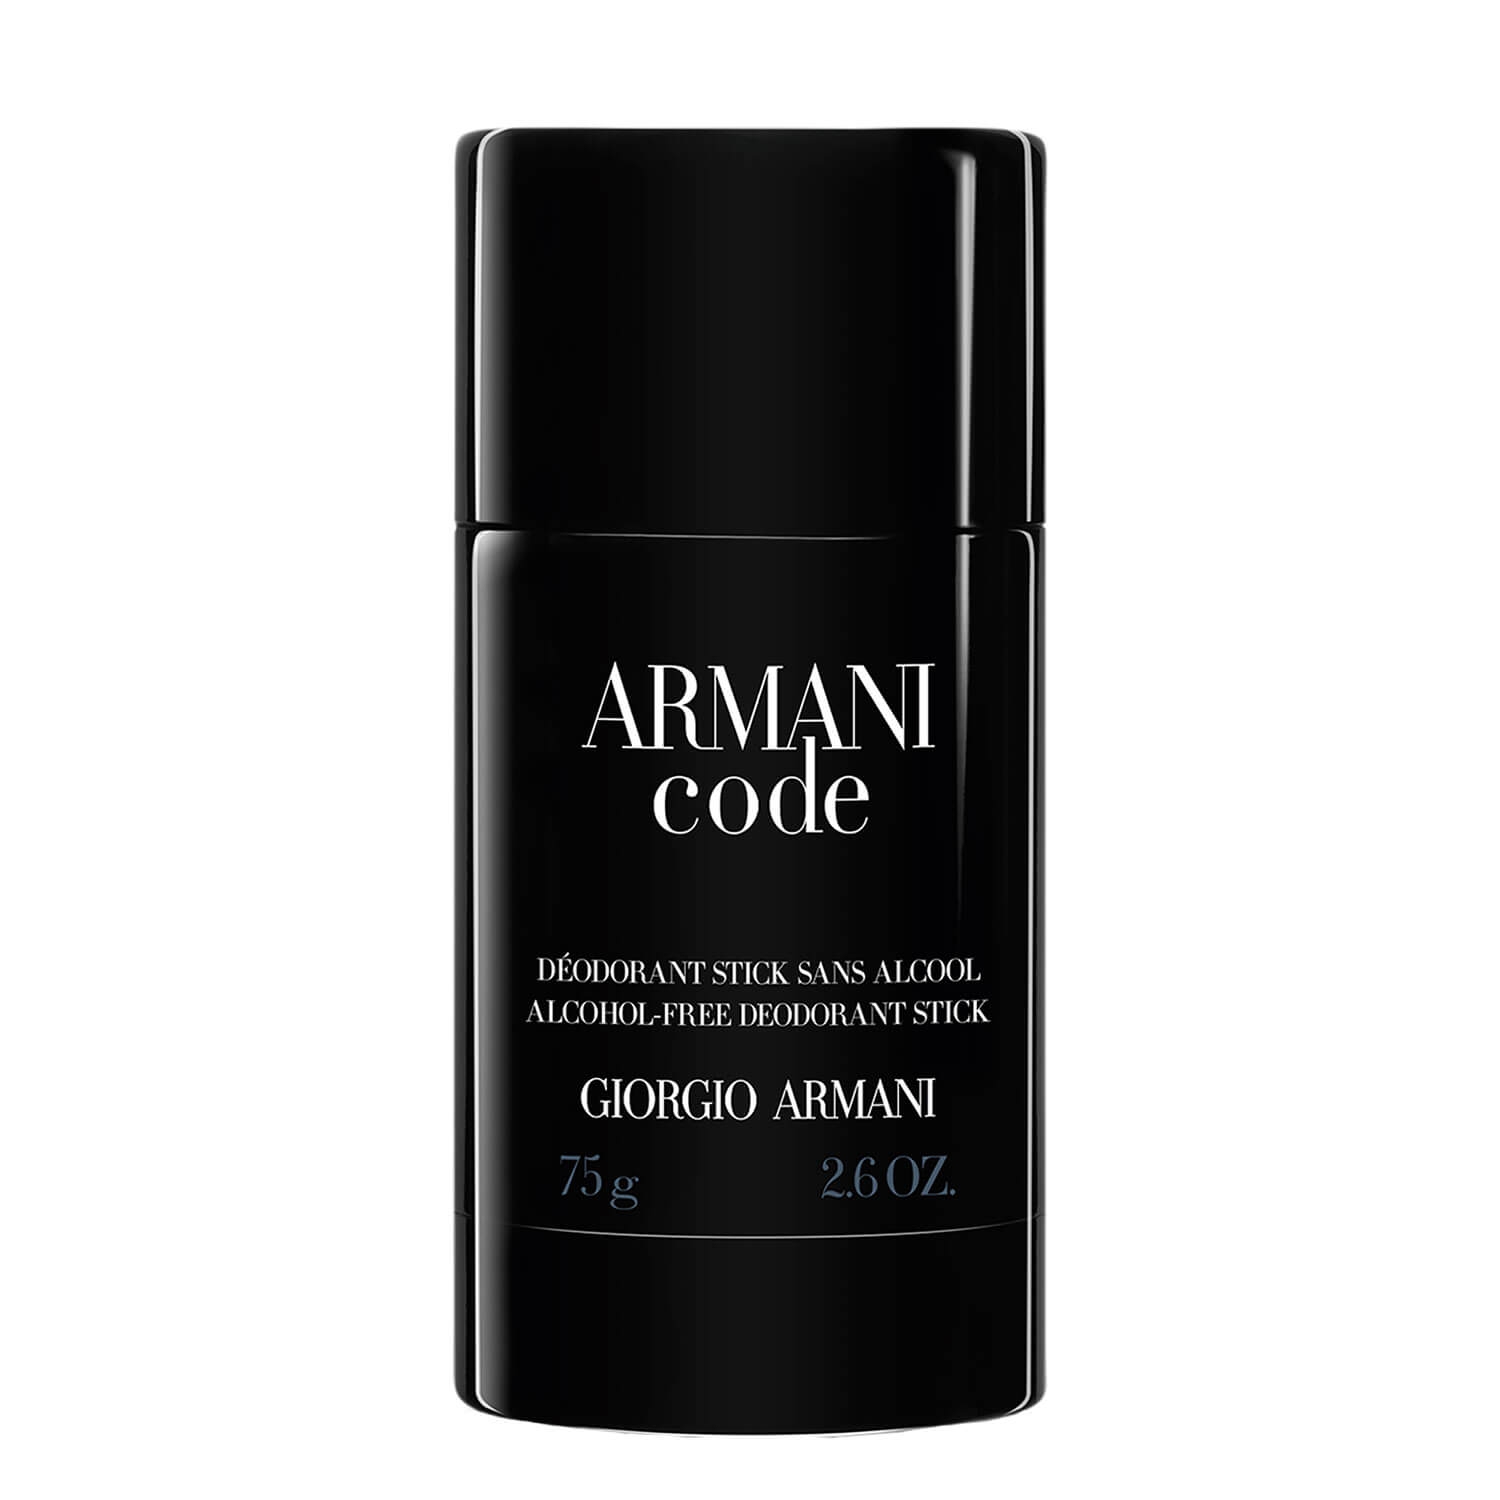 Produktbild von Armani Code - Deodorant Stick